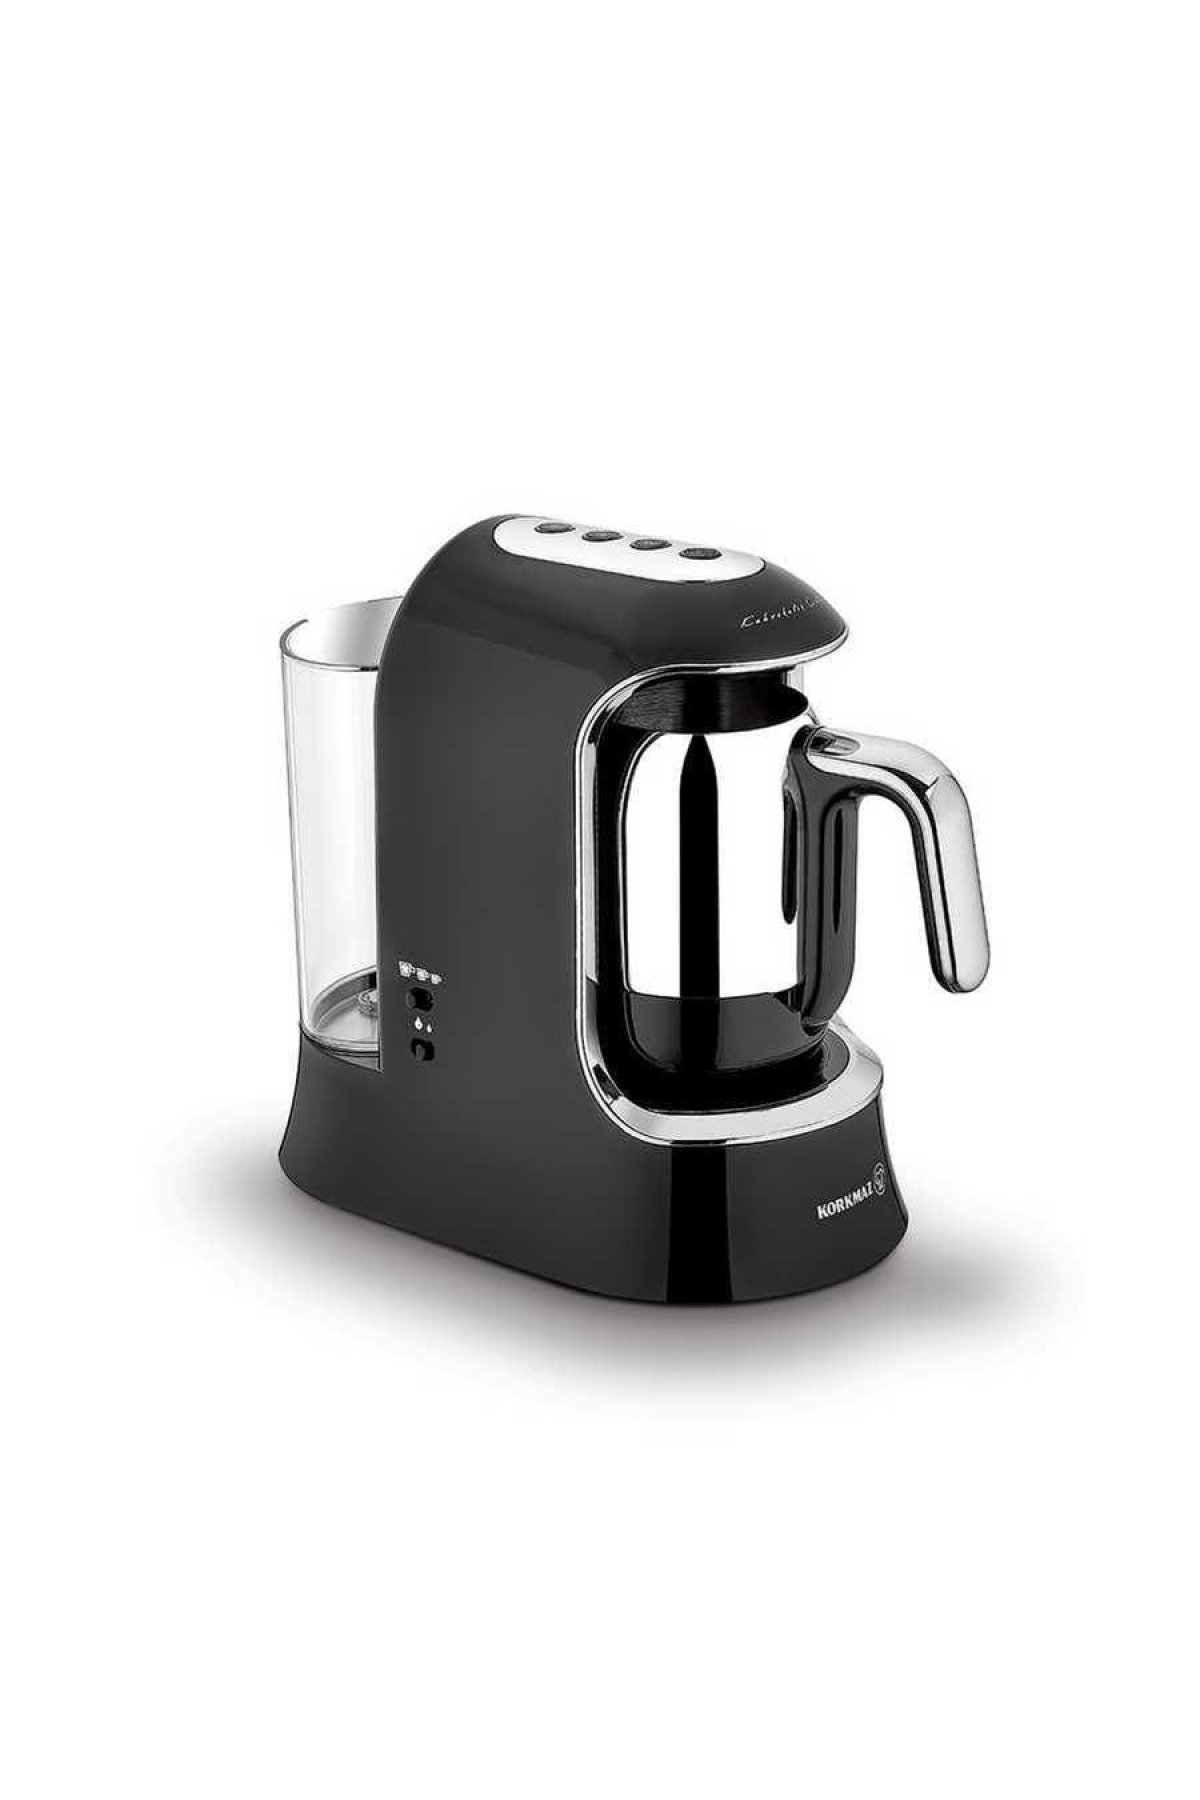 Korkmaz Kahvekolik Aqua Siyah/Krom Otomatik Kahve Makinesi OE8895